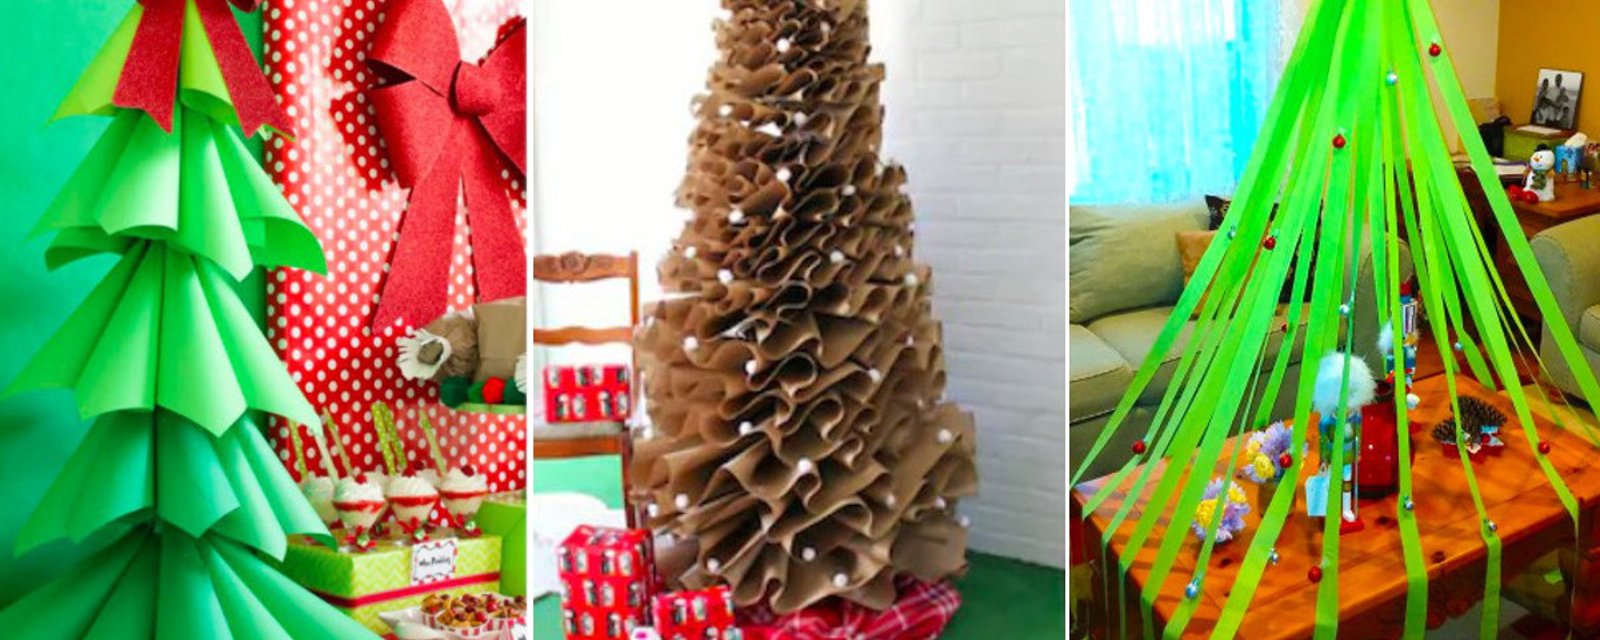 15 bonnes alternatives aux sapins de Noël quand on ne veut pas d'un arbre conventionnel! 